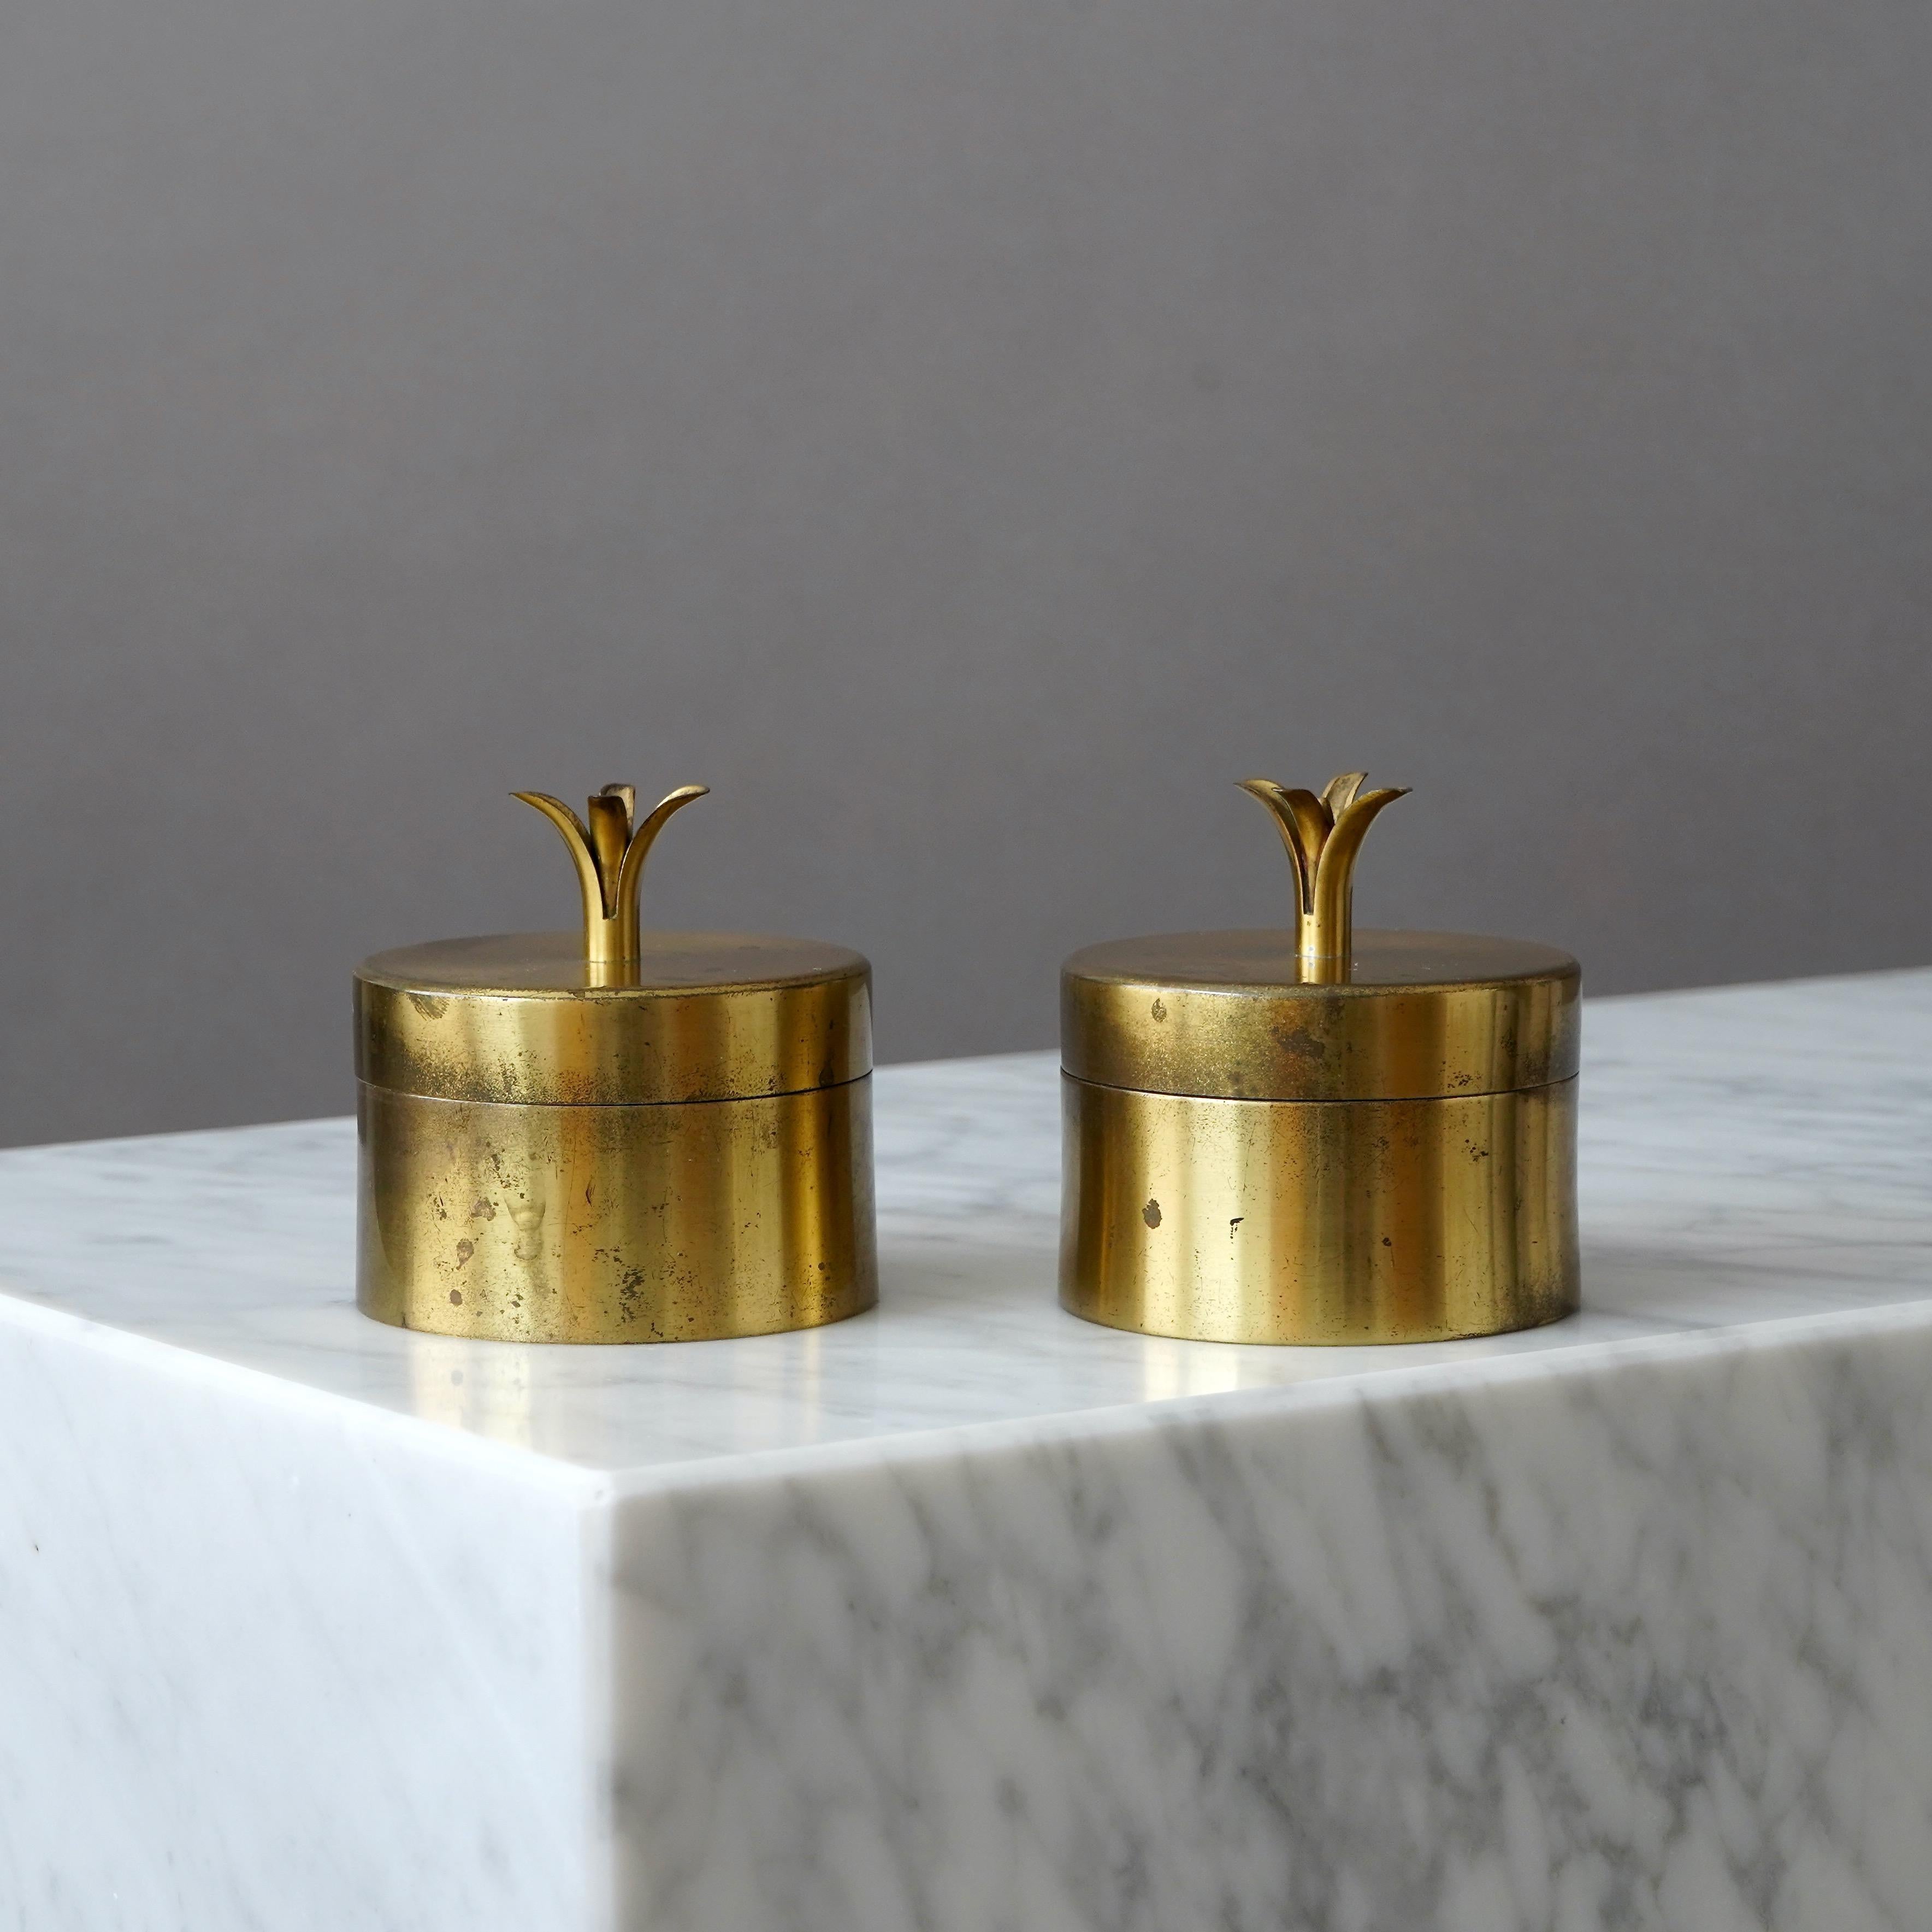 Pair of Brass Lidded Boxes by Ivar Ålenius Björk for Ystad Metall, Sweden, 1930s For Sale 3